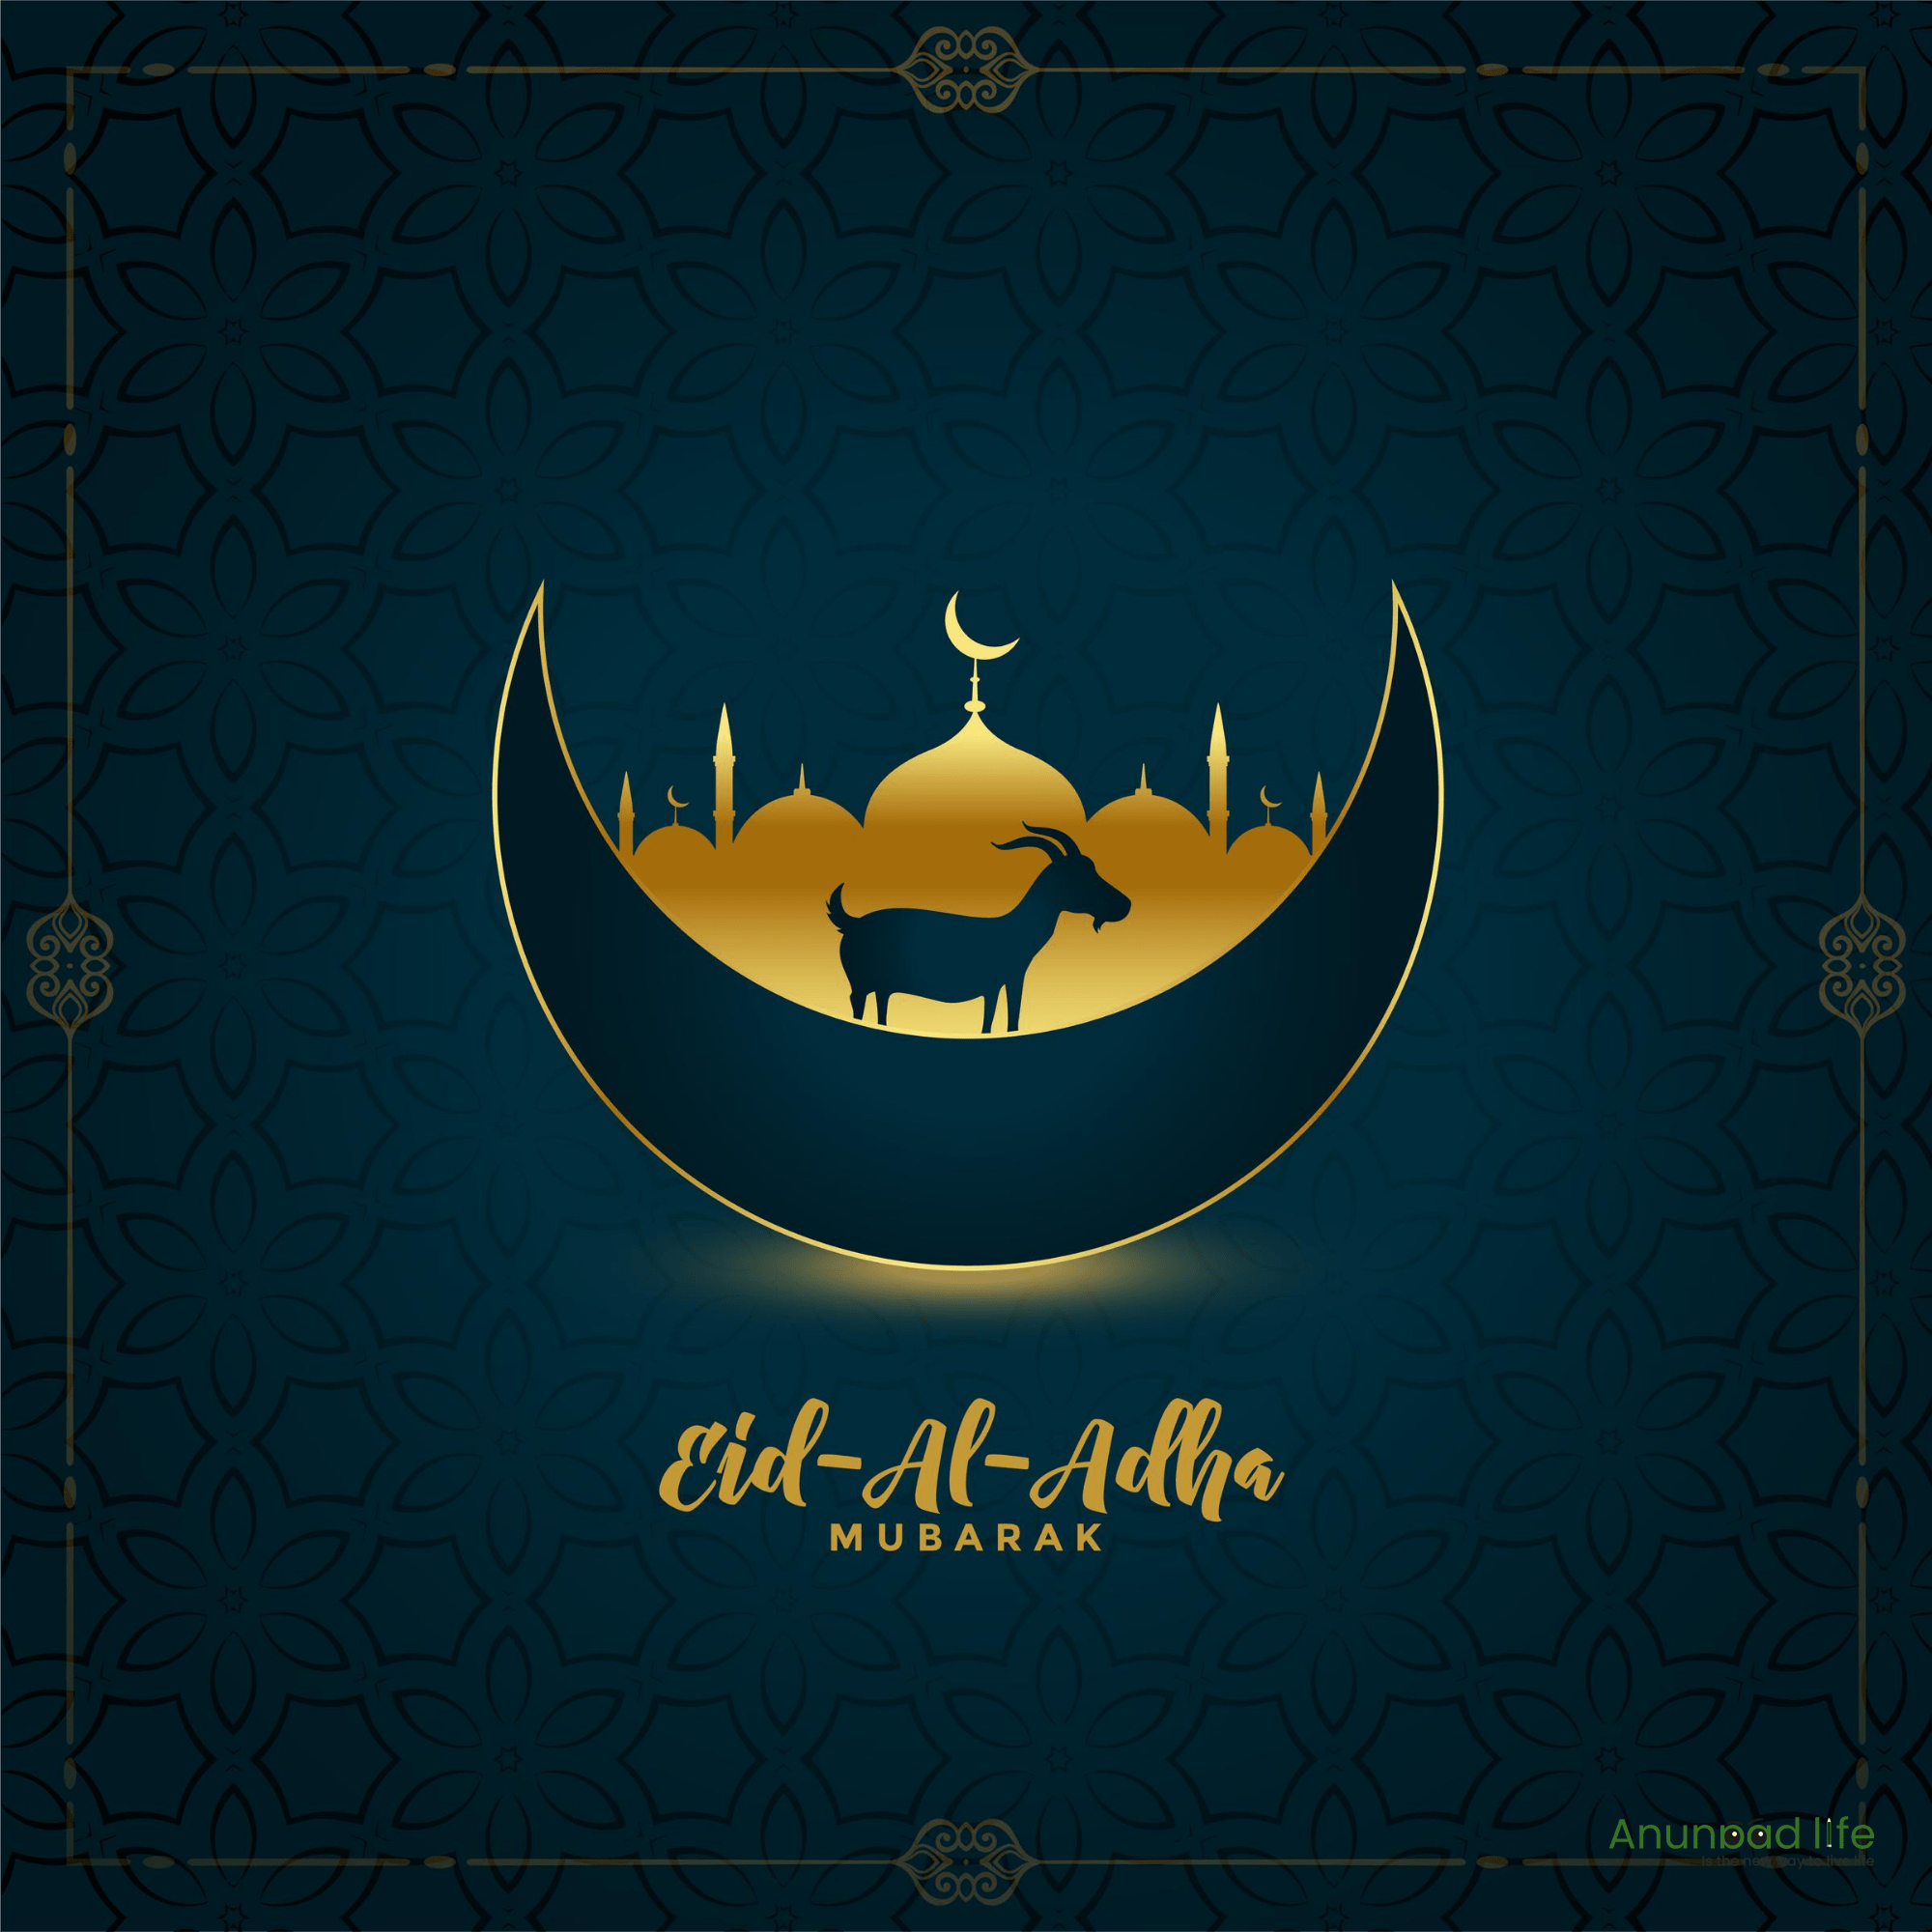 Eid Al-Adha 2020: Bakrid Mubarak Wishes, Mubarak, Images, and Quotes